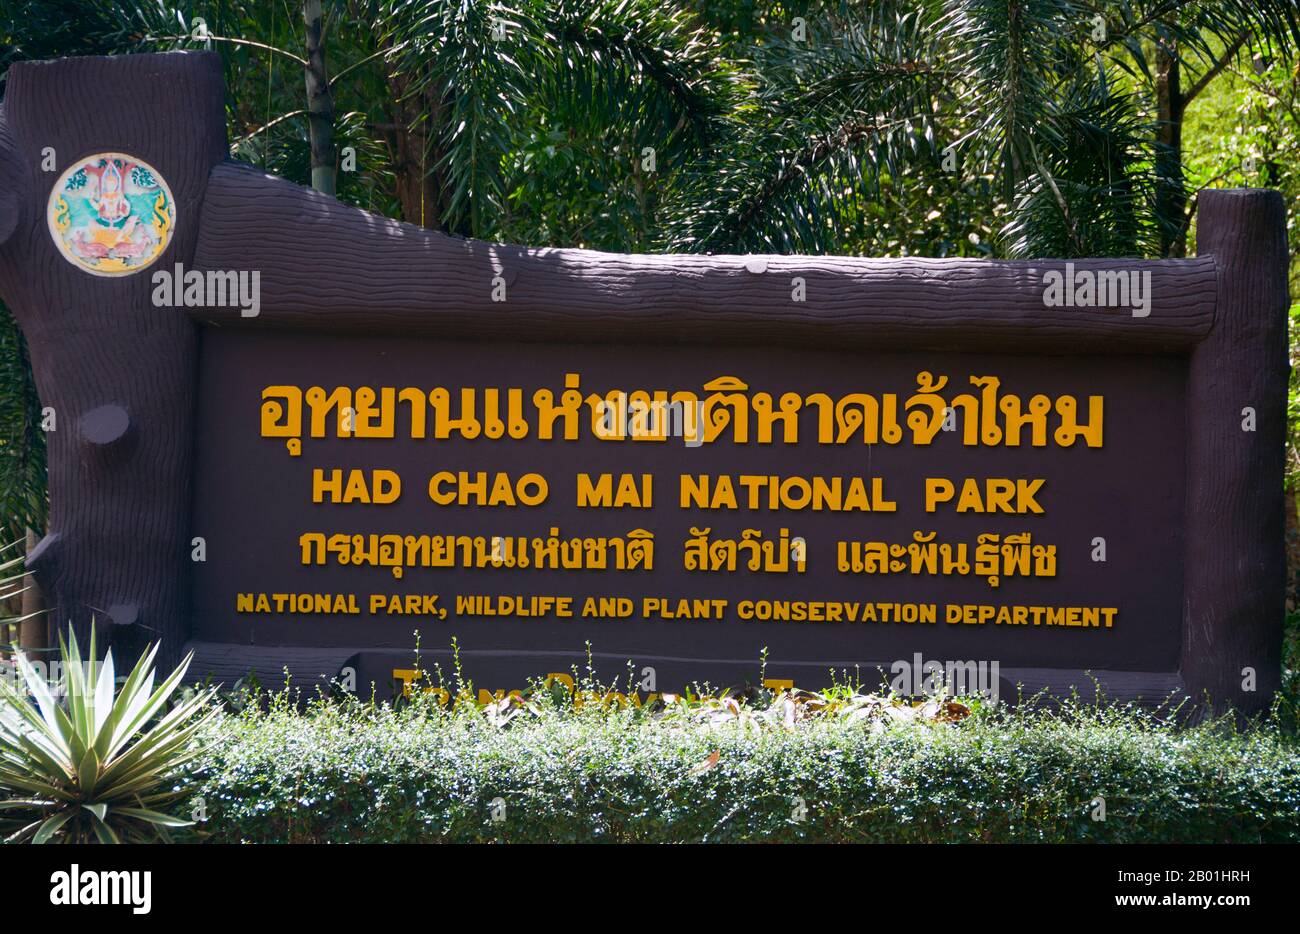 Thailand: Schild des Hauptsitzes, hat Chao Mai National Park, Provinz Trang. Die abwechslungsreiche Küstenlandschaft des hat Chao Mai Nationalparks umfasst Mangrovenbäche, Küstenkarste und versteckte Strände, die durch Höhlen erreicht werden. Einige der zahlreichen vor der Küste gelegenen Inseln von Trang sind unter Parkschutz, darunter Ko Kradan, Ko Cheuk und Ko Muk. Seltene Dugongs können manchmal in den flachen Gewässern und Seegraswiesen zwischen dem Festland und den Inseln gesichtet werden; andere Säugetiere sind Seeotter und Delfine auf See sowie Langlänzer, Makaken, Pfannengolin und Wildschweine an Land. Stockfoto